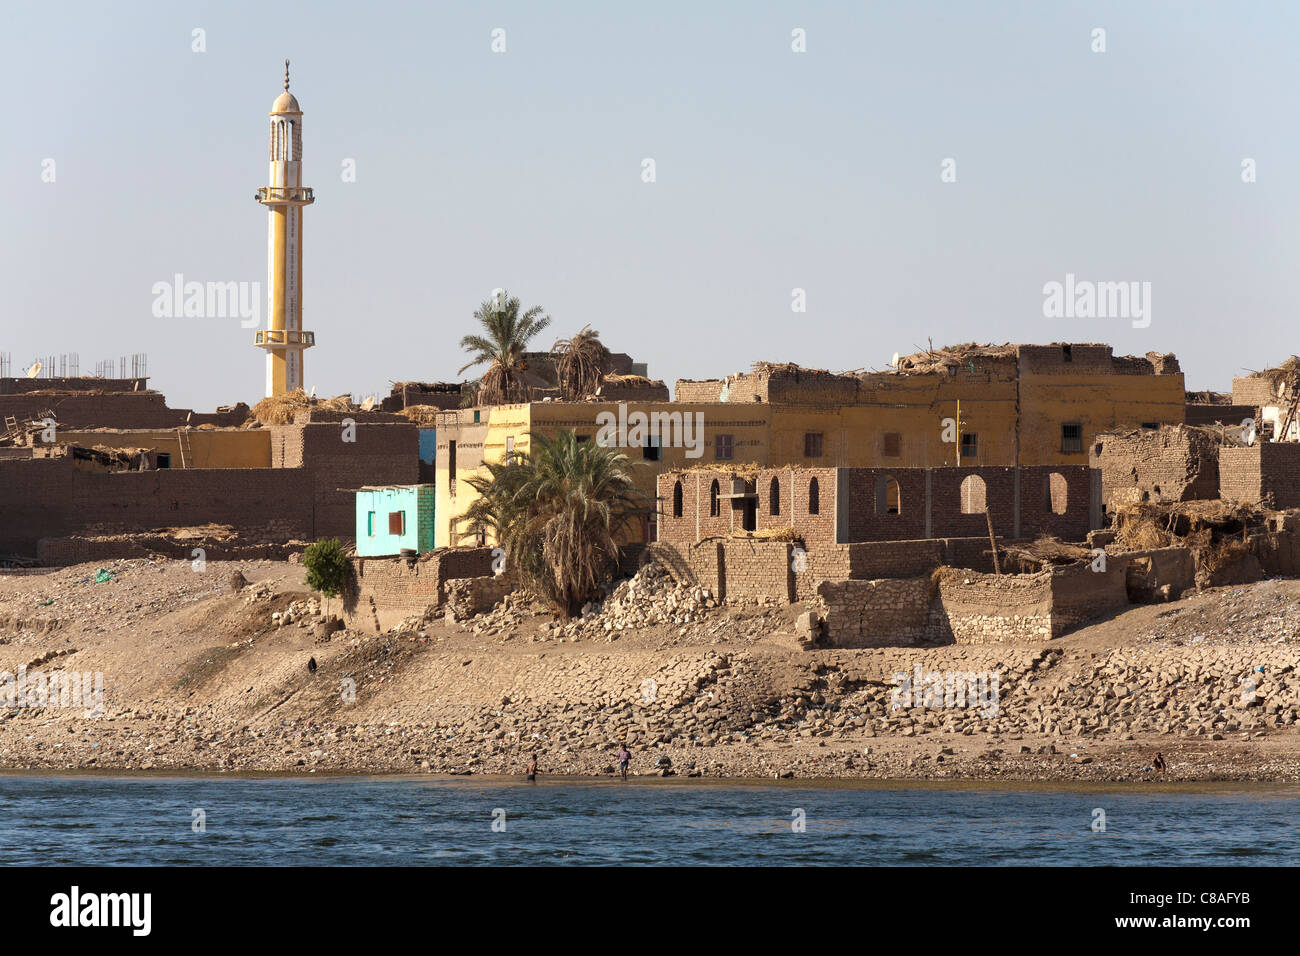 La sección de banco del río Nilo con el tradicional senderismo casas, una en construcción, con restos de barro y un minarete de la mezquita Foto de stock